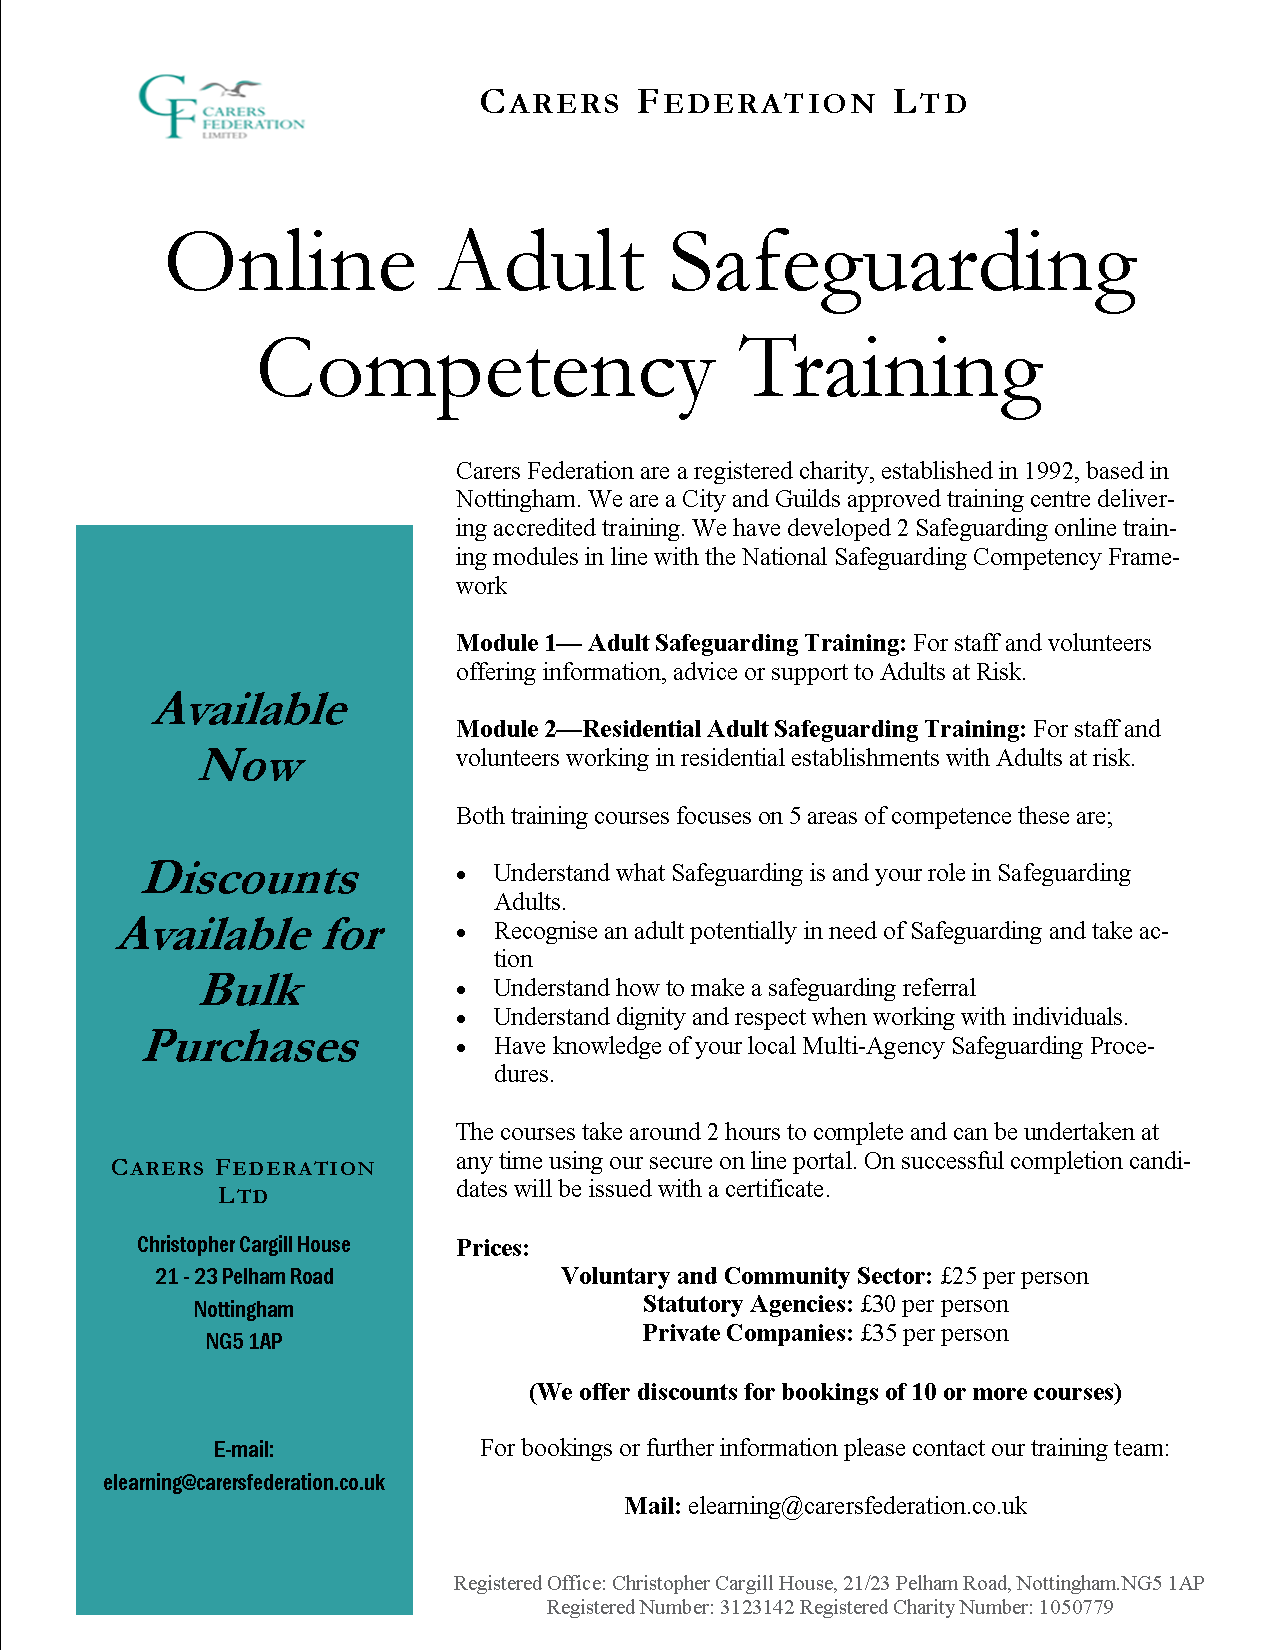 Vedlegg Safeguarding Training  flyer Feb 2019.png